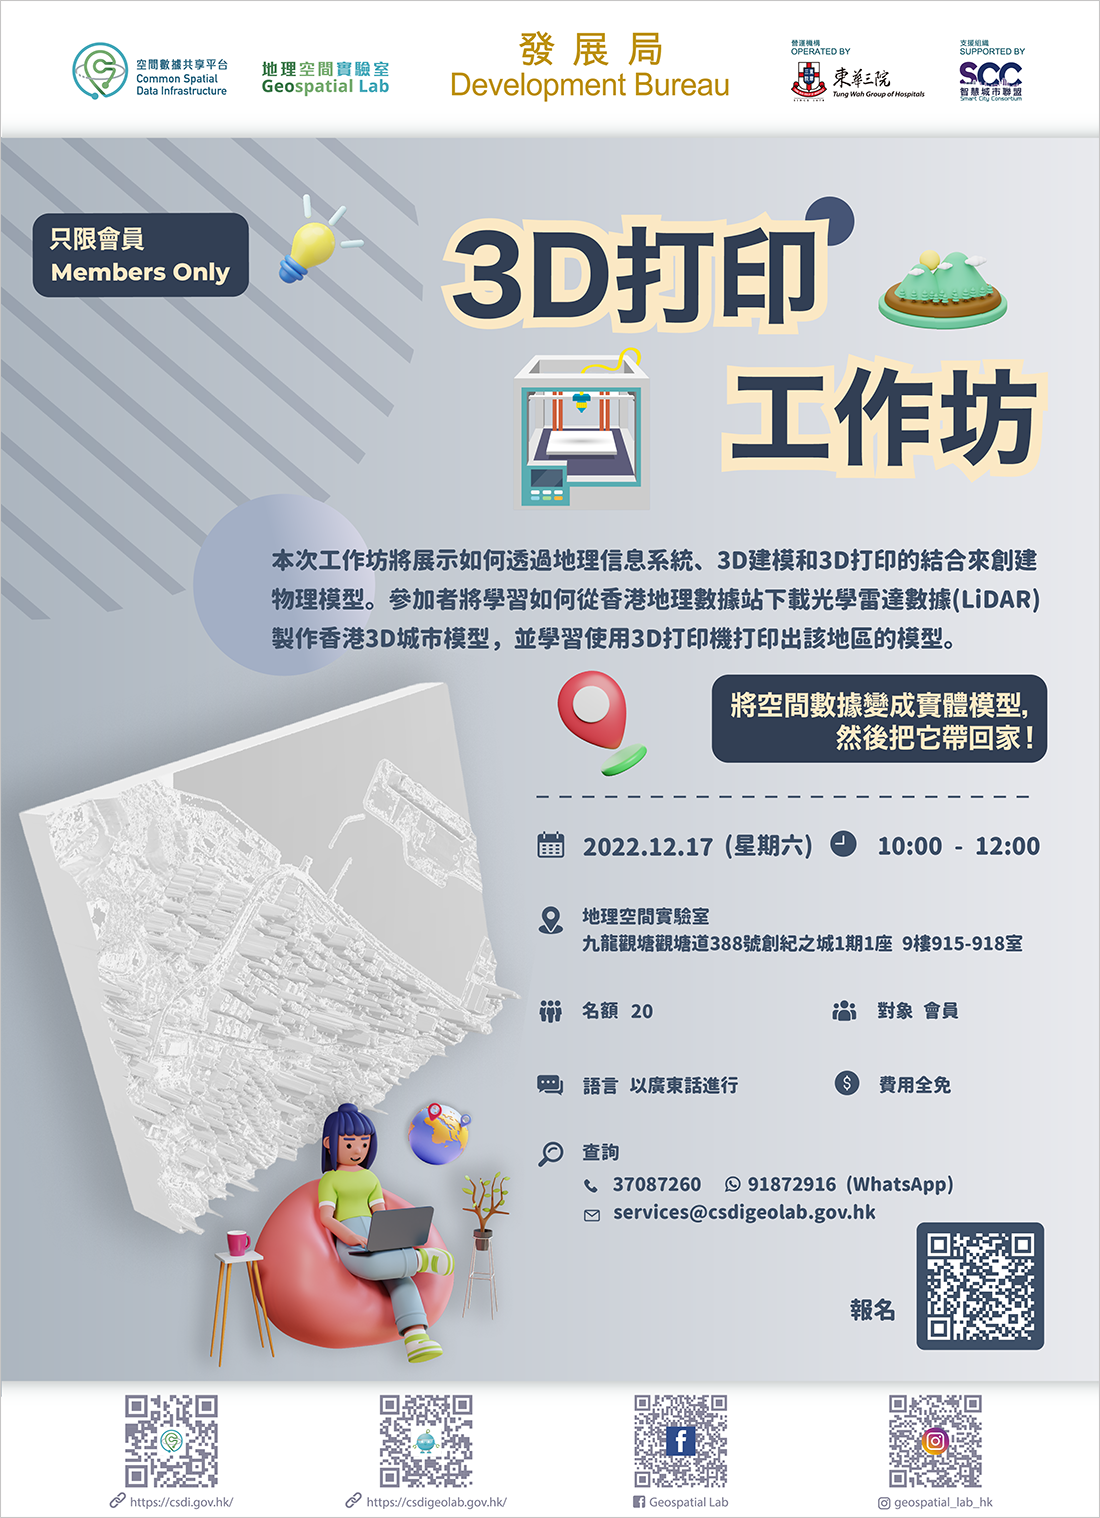 会员活动 「3D打印 - 使用LiDAR数据创建3D城市模型」海报